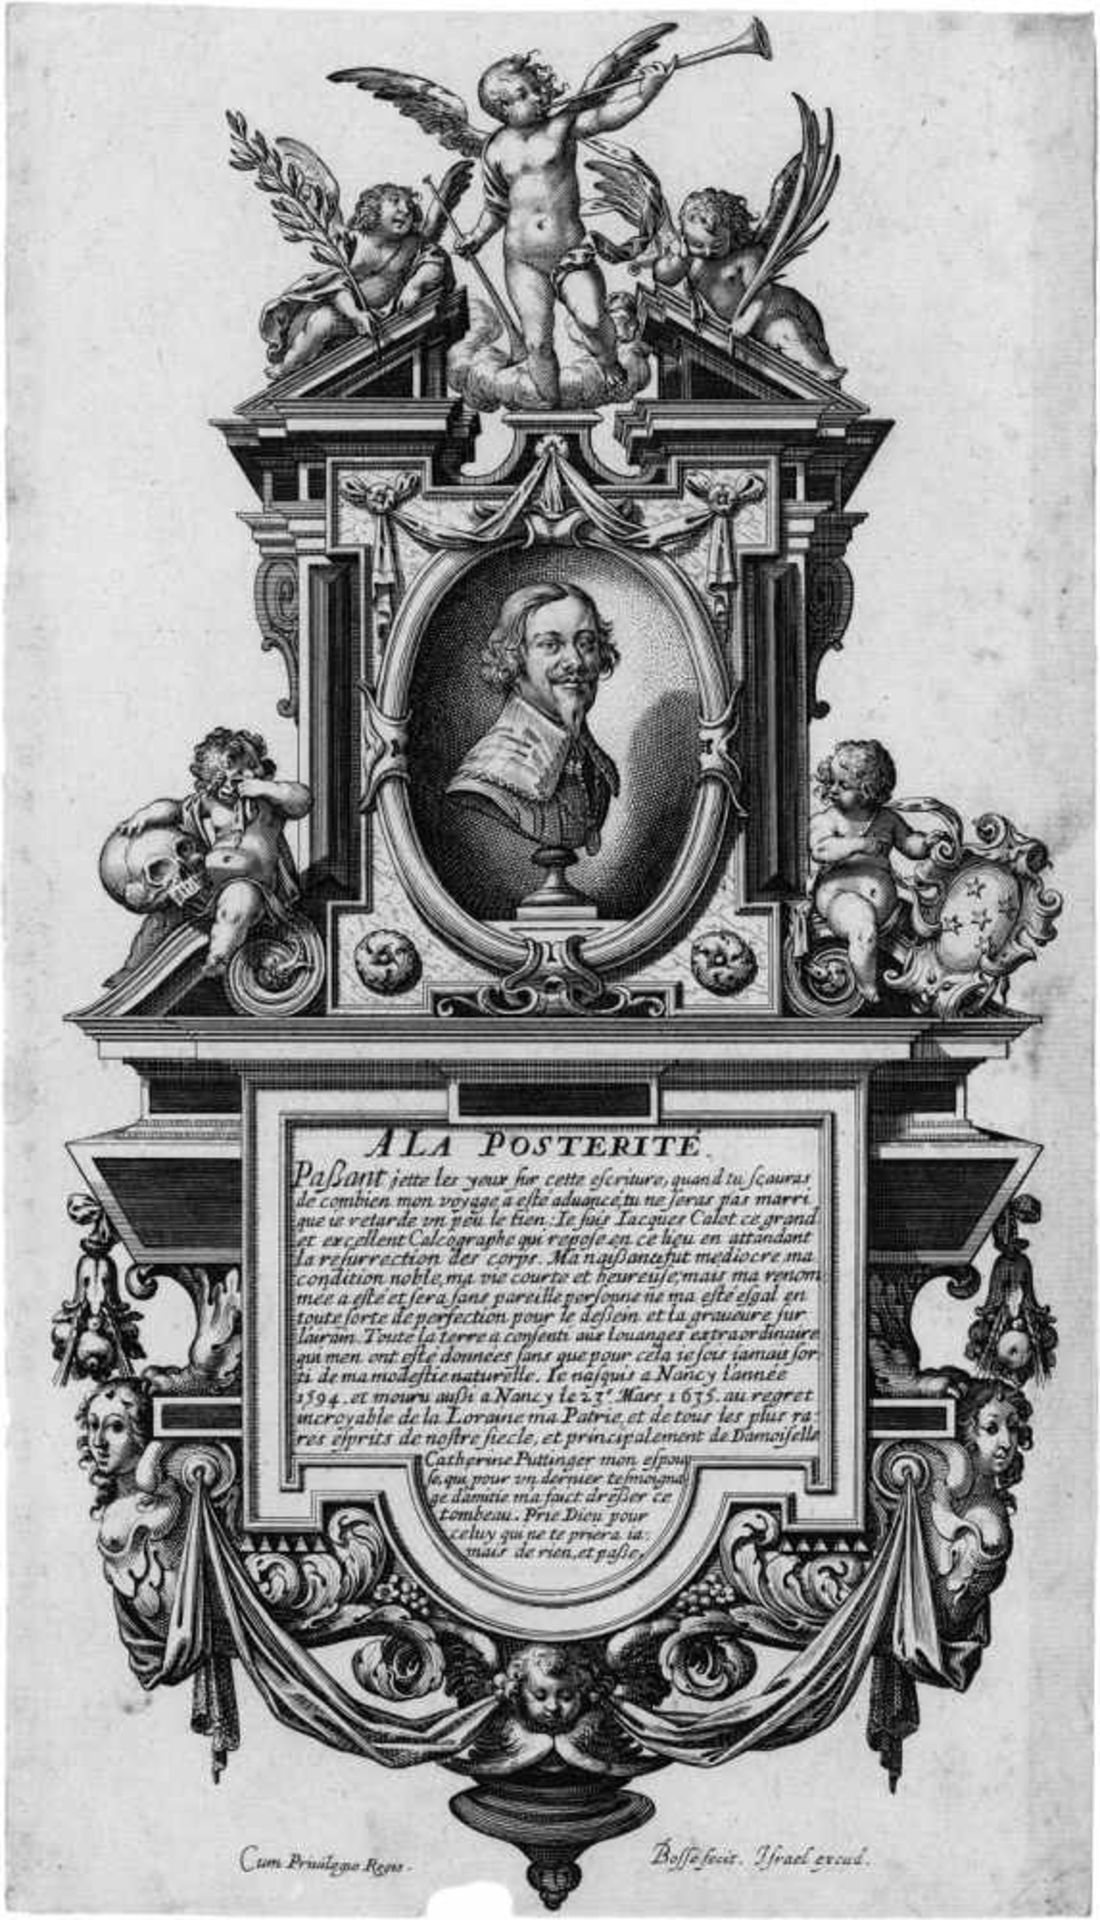 Bosse, Abraham: Epitaph für Jacques CallotEpitaph für Jacques Callot. Radierung. 24,5 x 13,8 cm.